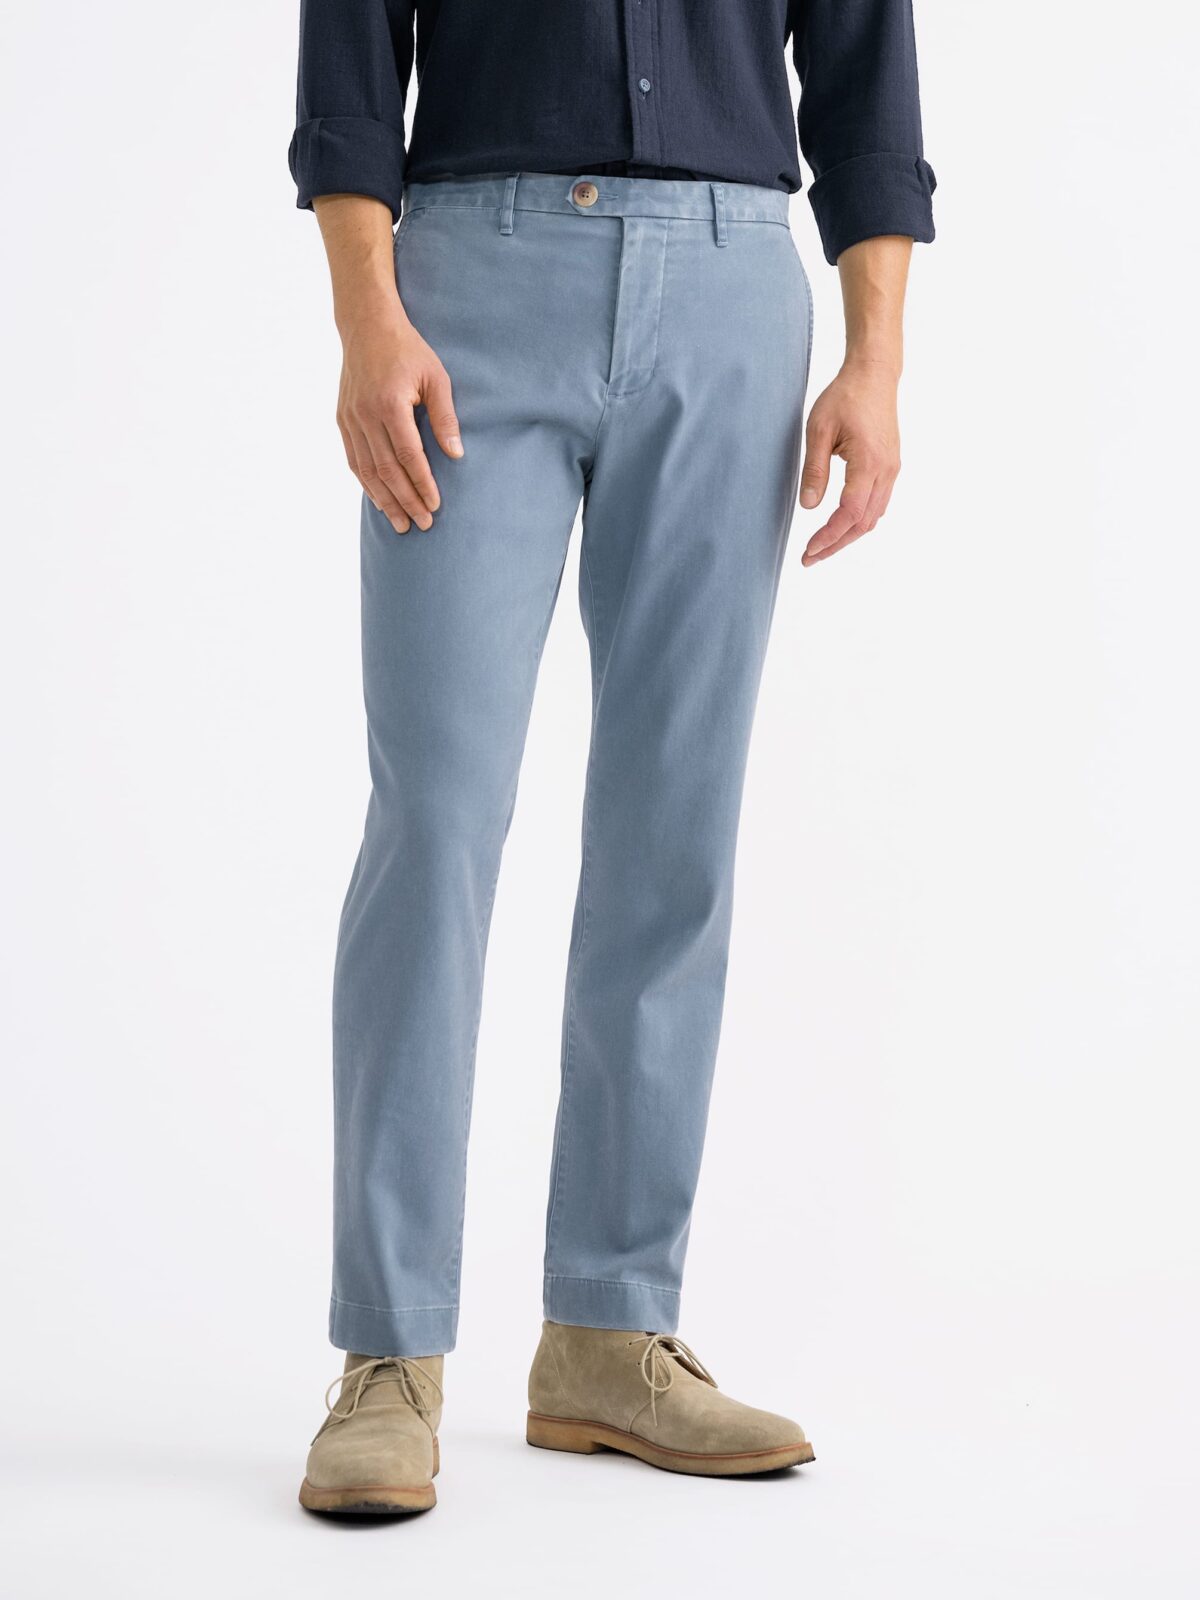 Men's pants chinos - light blue P894 | Ombre.com - Men's clothing online